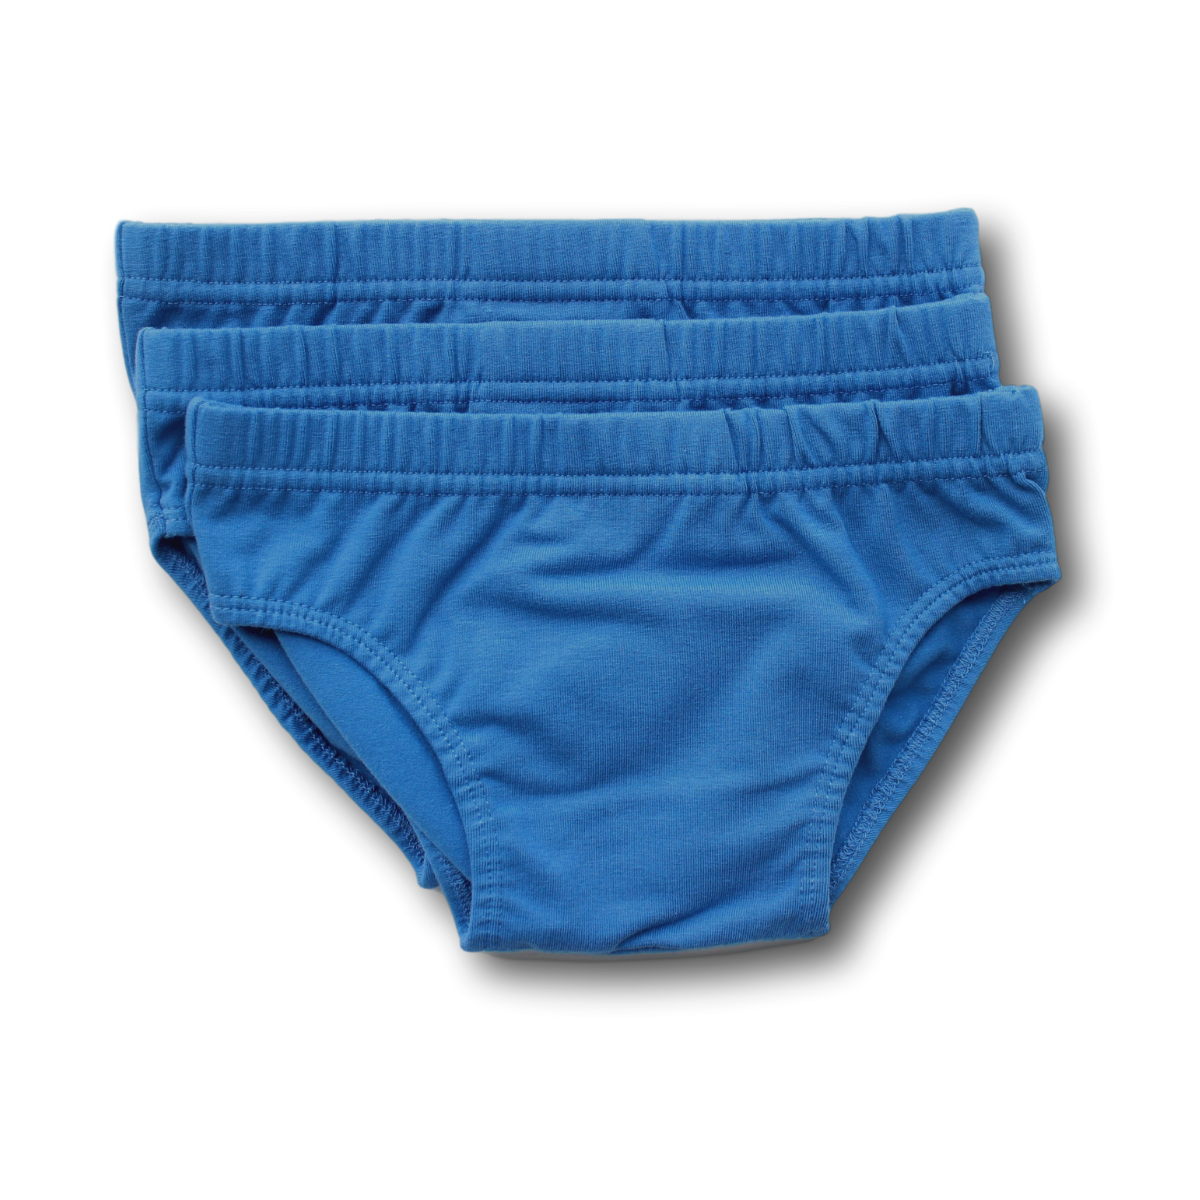  Girls Organic Cotton Underwear